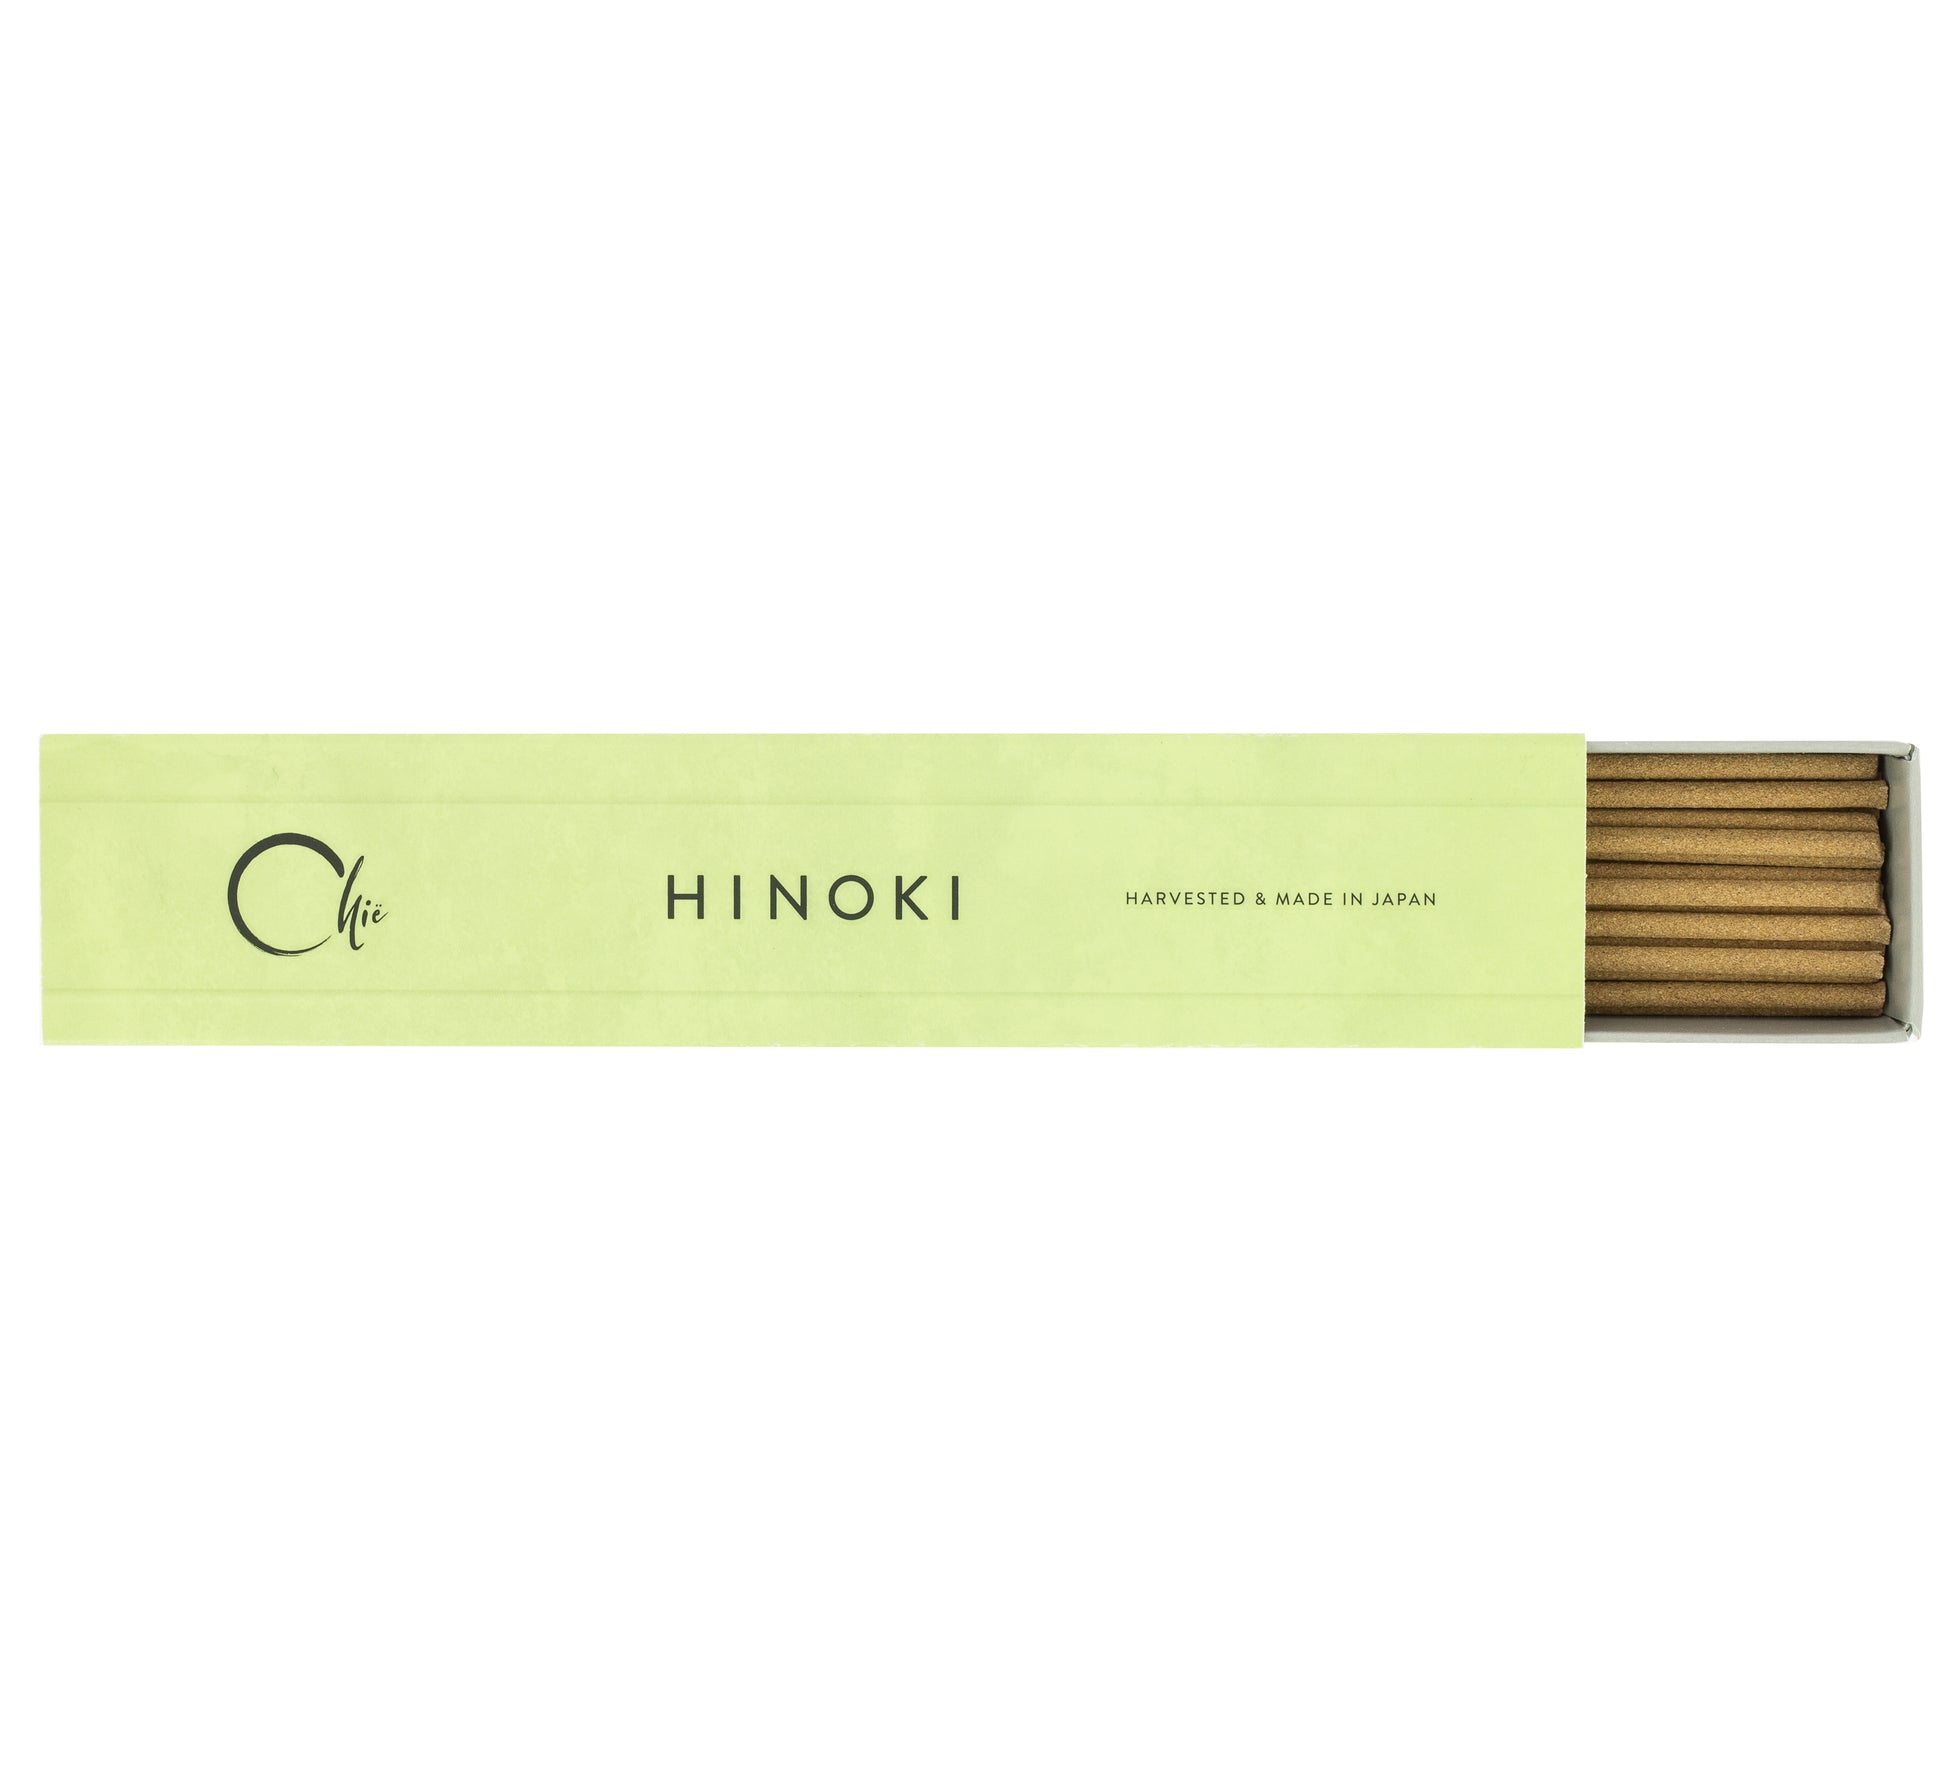 Incienso chië de hinoki 100% natural, con incensario de cerámica de seto japonesa.